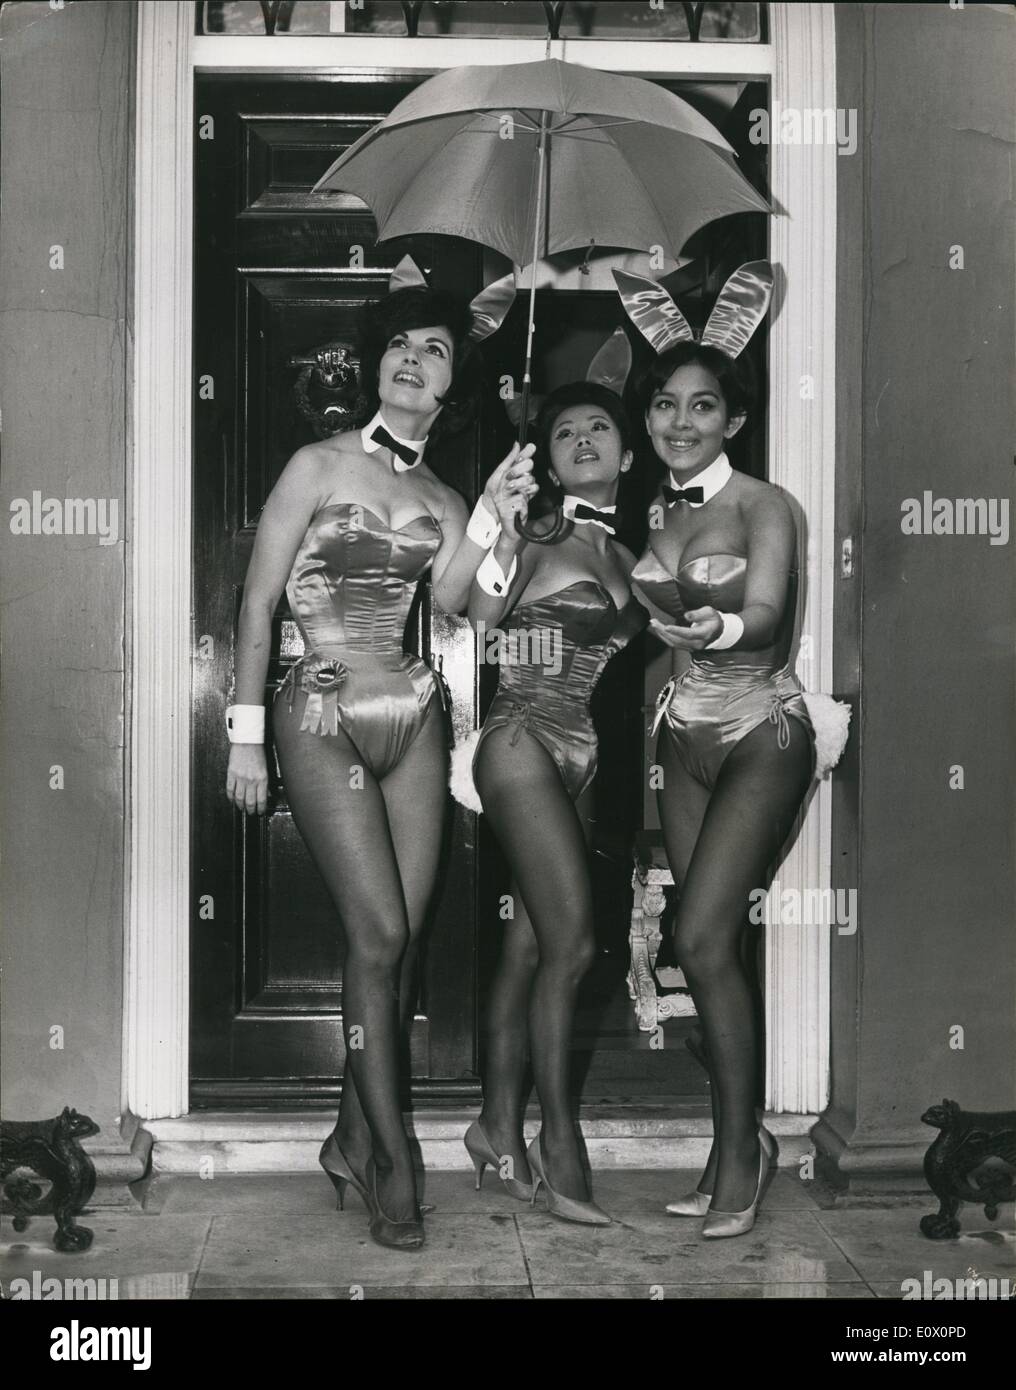 10 octobre 1964 - Playboy Bunnies Club à Londres : sept beaux lapins du célèbre Playboy Clubs, sont arrivés à Londres pour une semaine de visite. Toutes les filles 'Bunny Award' gagnants choisis parmi plus de 700 membres du personnel de l'oms les bunnies Playboy dix clubs, ont été sélectionnés pour leur apparence, de bienveillance et de popularité. Tandis qu'à Londres ils apparaissent sur un certain nombre de programmes de télévision. Photo montre trois des lapins partager un parapluie sous la pluie Londres aujourd'hui. Ils sont (de gauche à droite) : Martha Louise Hellwig, de la Nouvelle Orléans, Elizabeth Yee, de New York ; et Katherine Fitzpatrick de Detroit. Banque D'Images